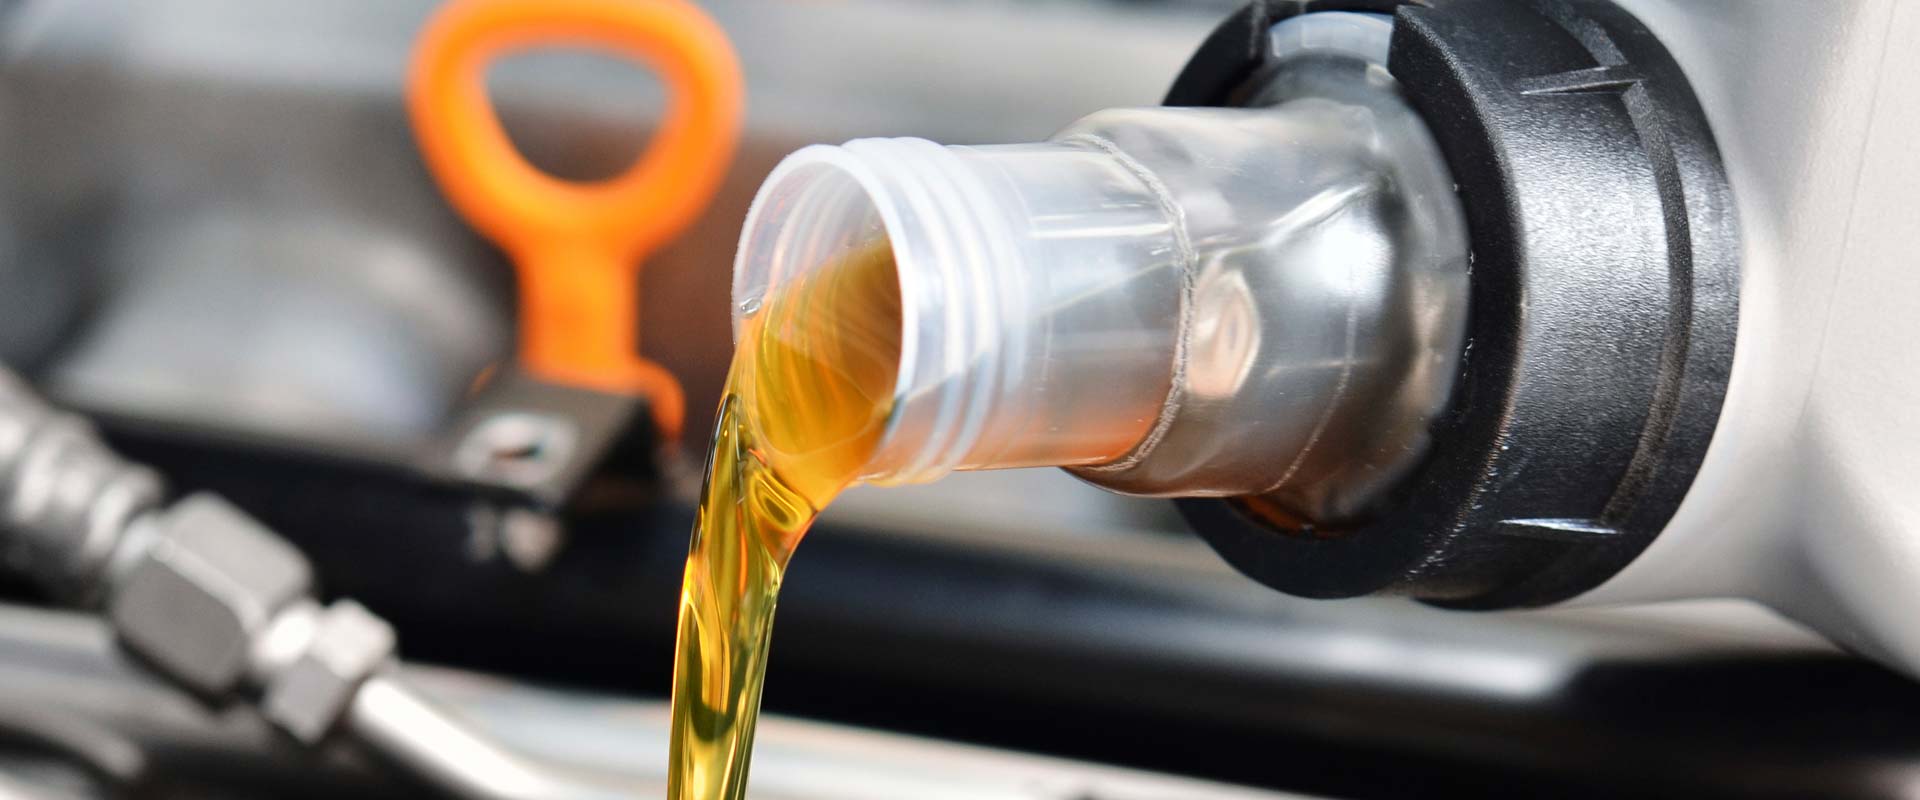 Как менять моторное масло в автомобиле